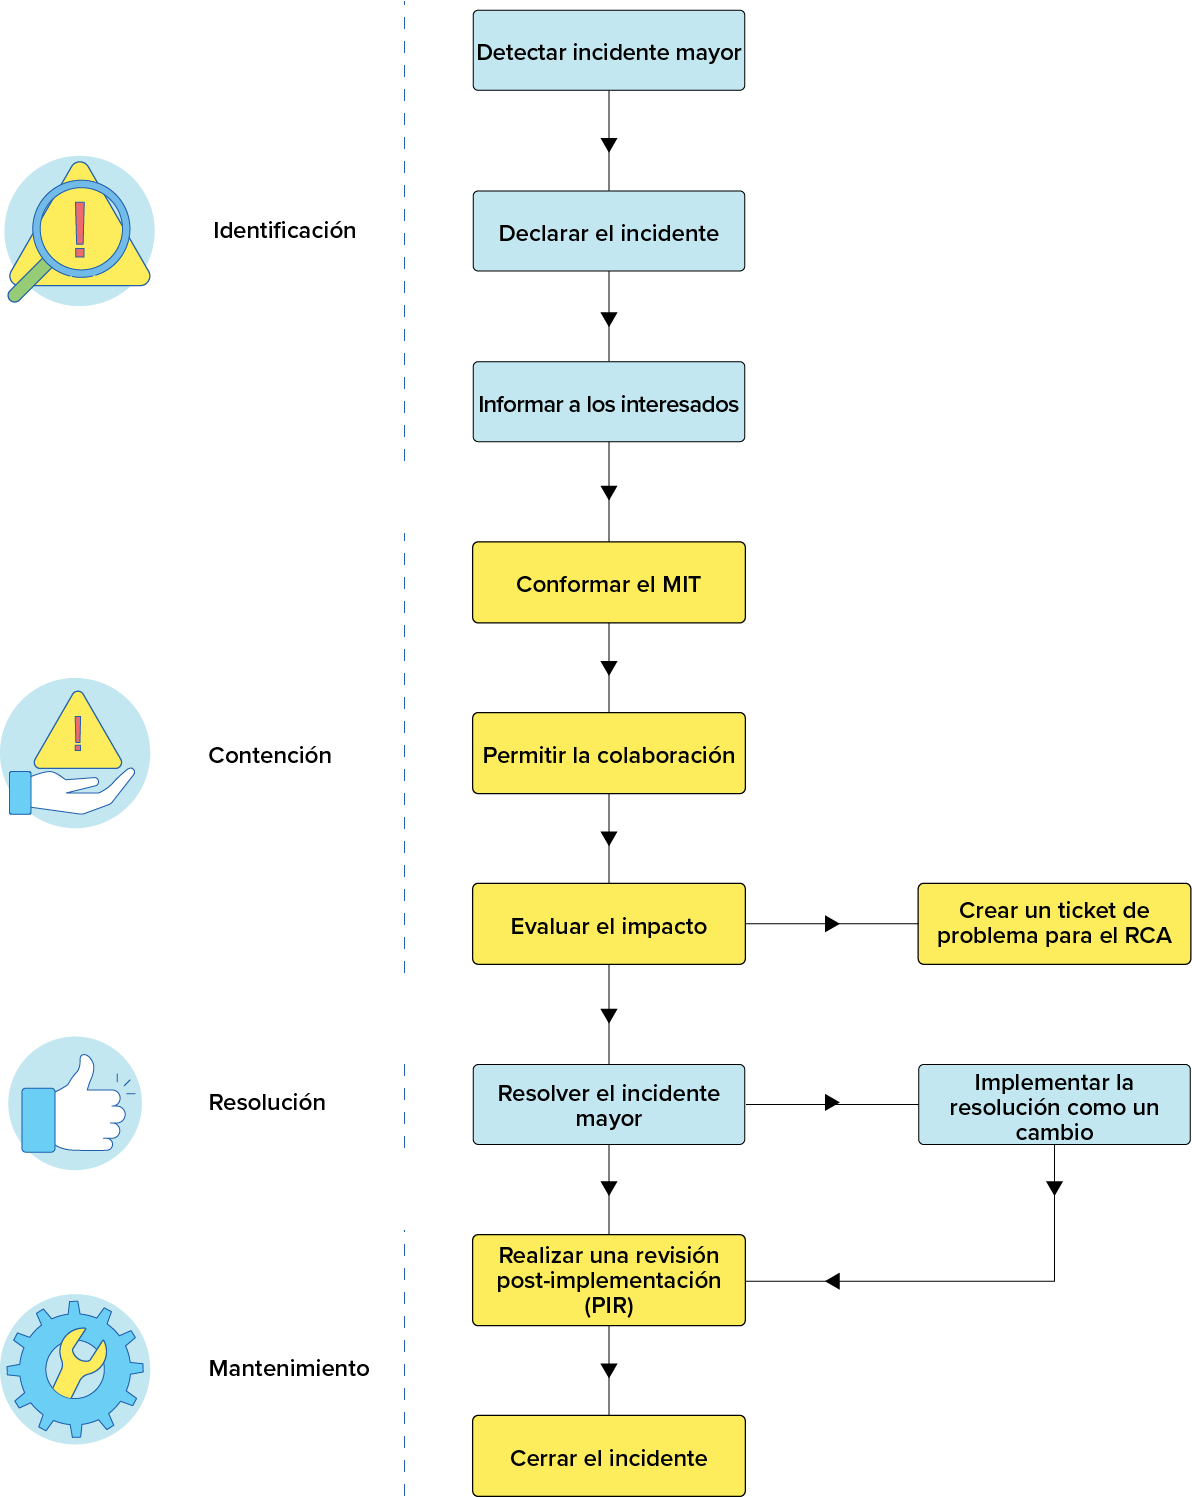 Diagrama workflow proceso gestión de incidentes mayores ITIL